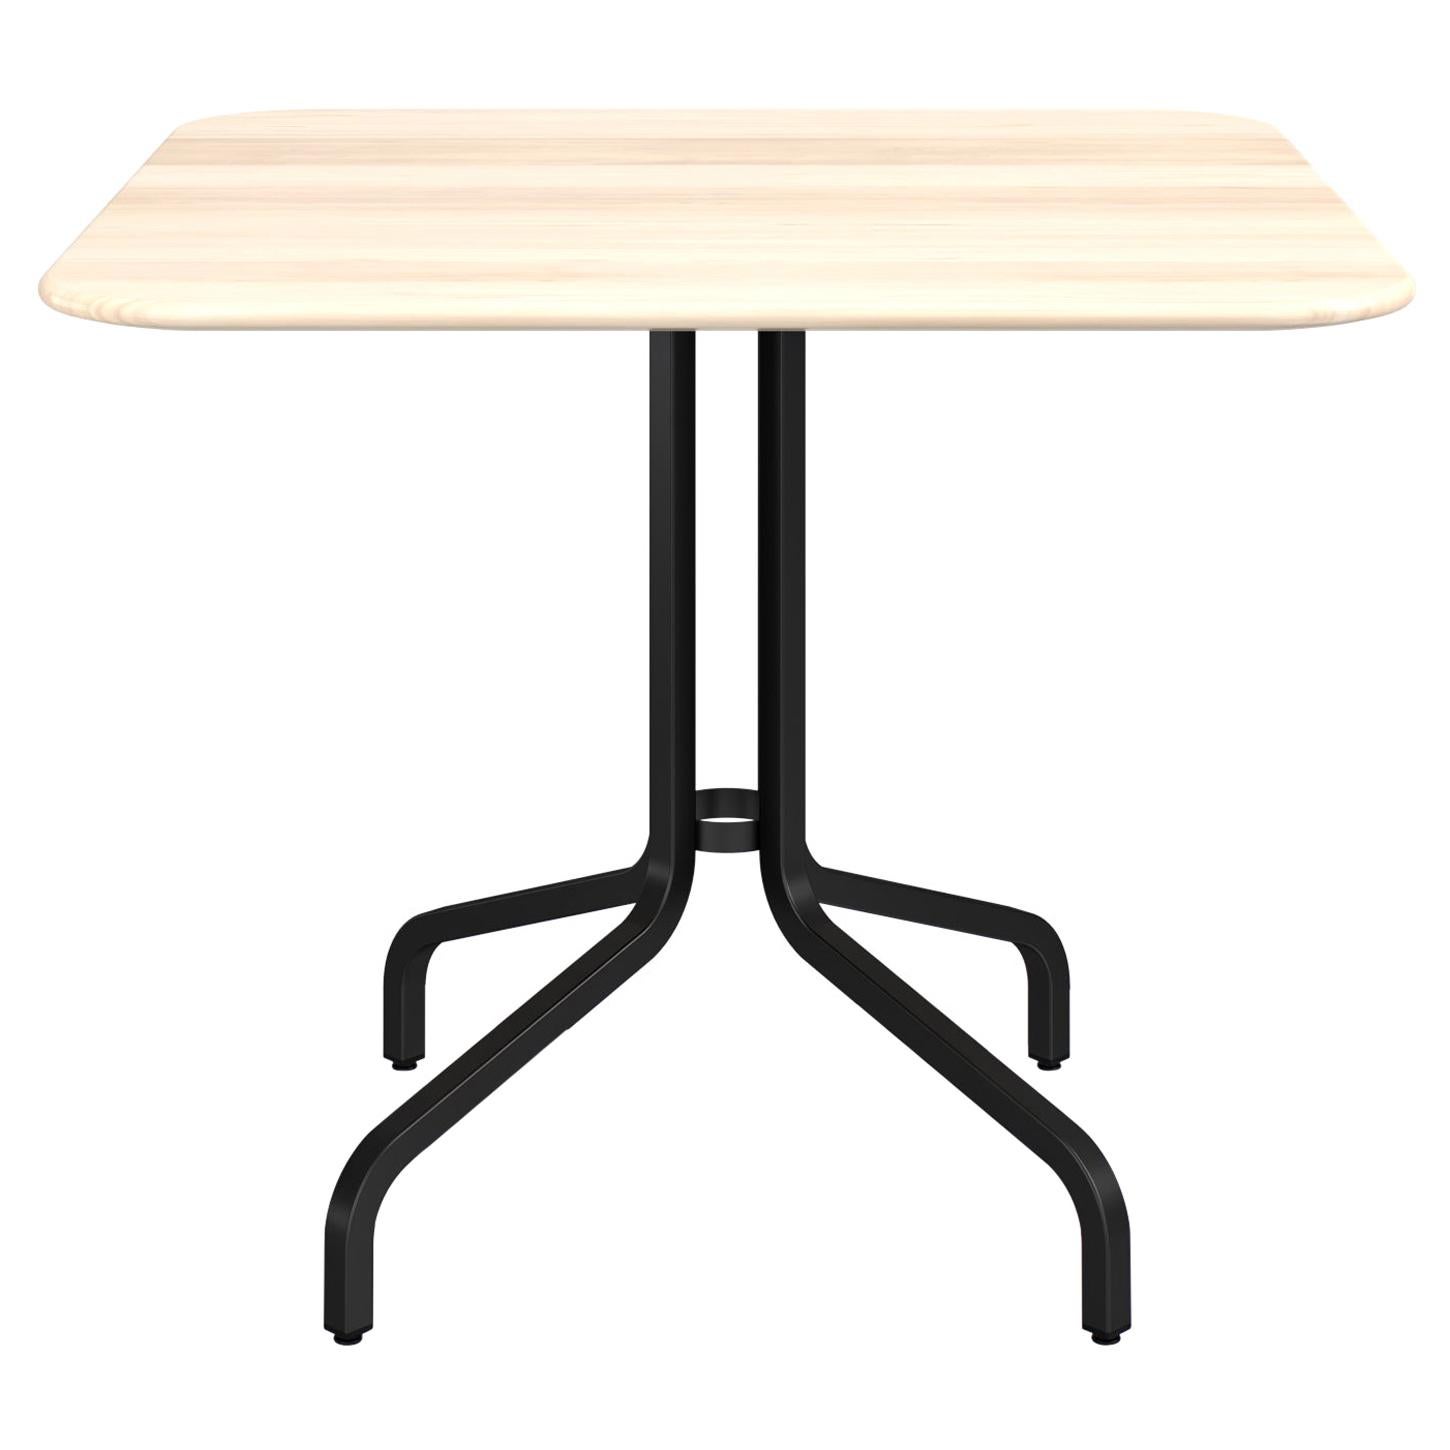 Grande table basse Emeco de 2,54 cm avec pieds noirs et plateau en bois par Jasper Morrison